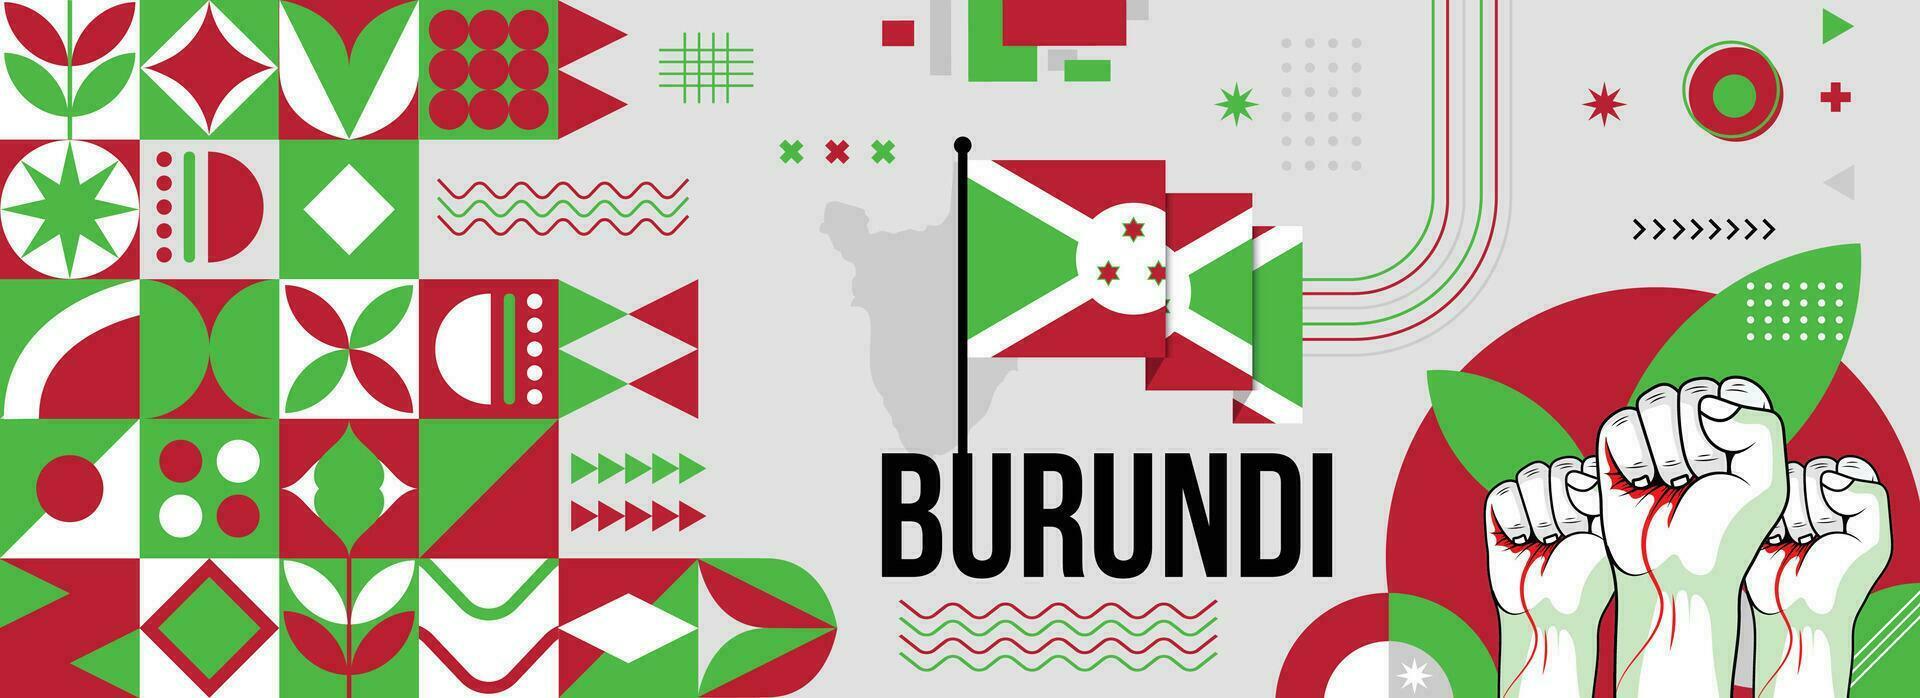 Burundi nacional o independencia día bandera para país celebracion. bandera y mapa de Burundi con elevado puños moderno retro diseño con tiporgafia resumen geométrico iconos vector ilustración